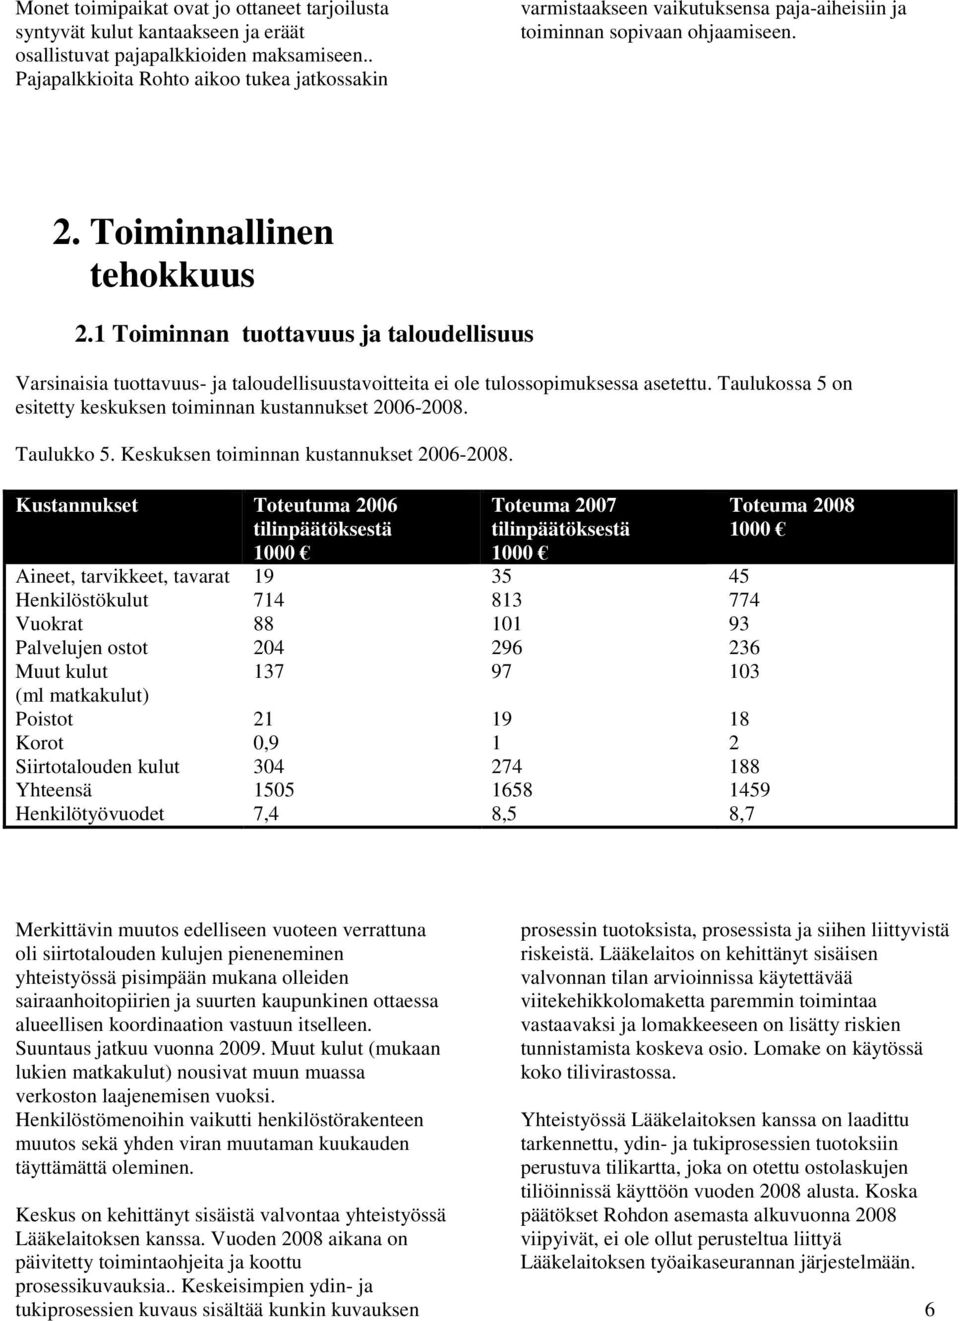 1 Toiminnan tuottavuus ja taloudellisuus Varsinaisia tuottavuus- ja taloudellisuustavoitteita ei ole asetettu. Taulukossa 5 on esitetty keskuksen toiminnan kustannukset 2006-2008. Taulukko 5.